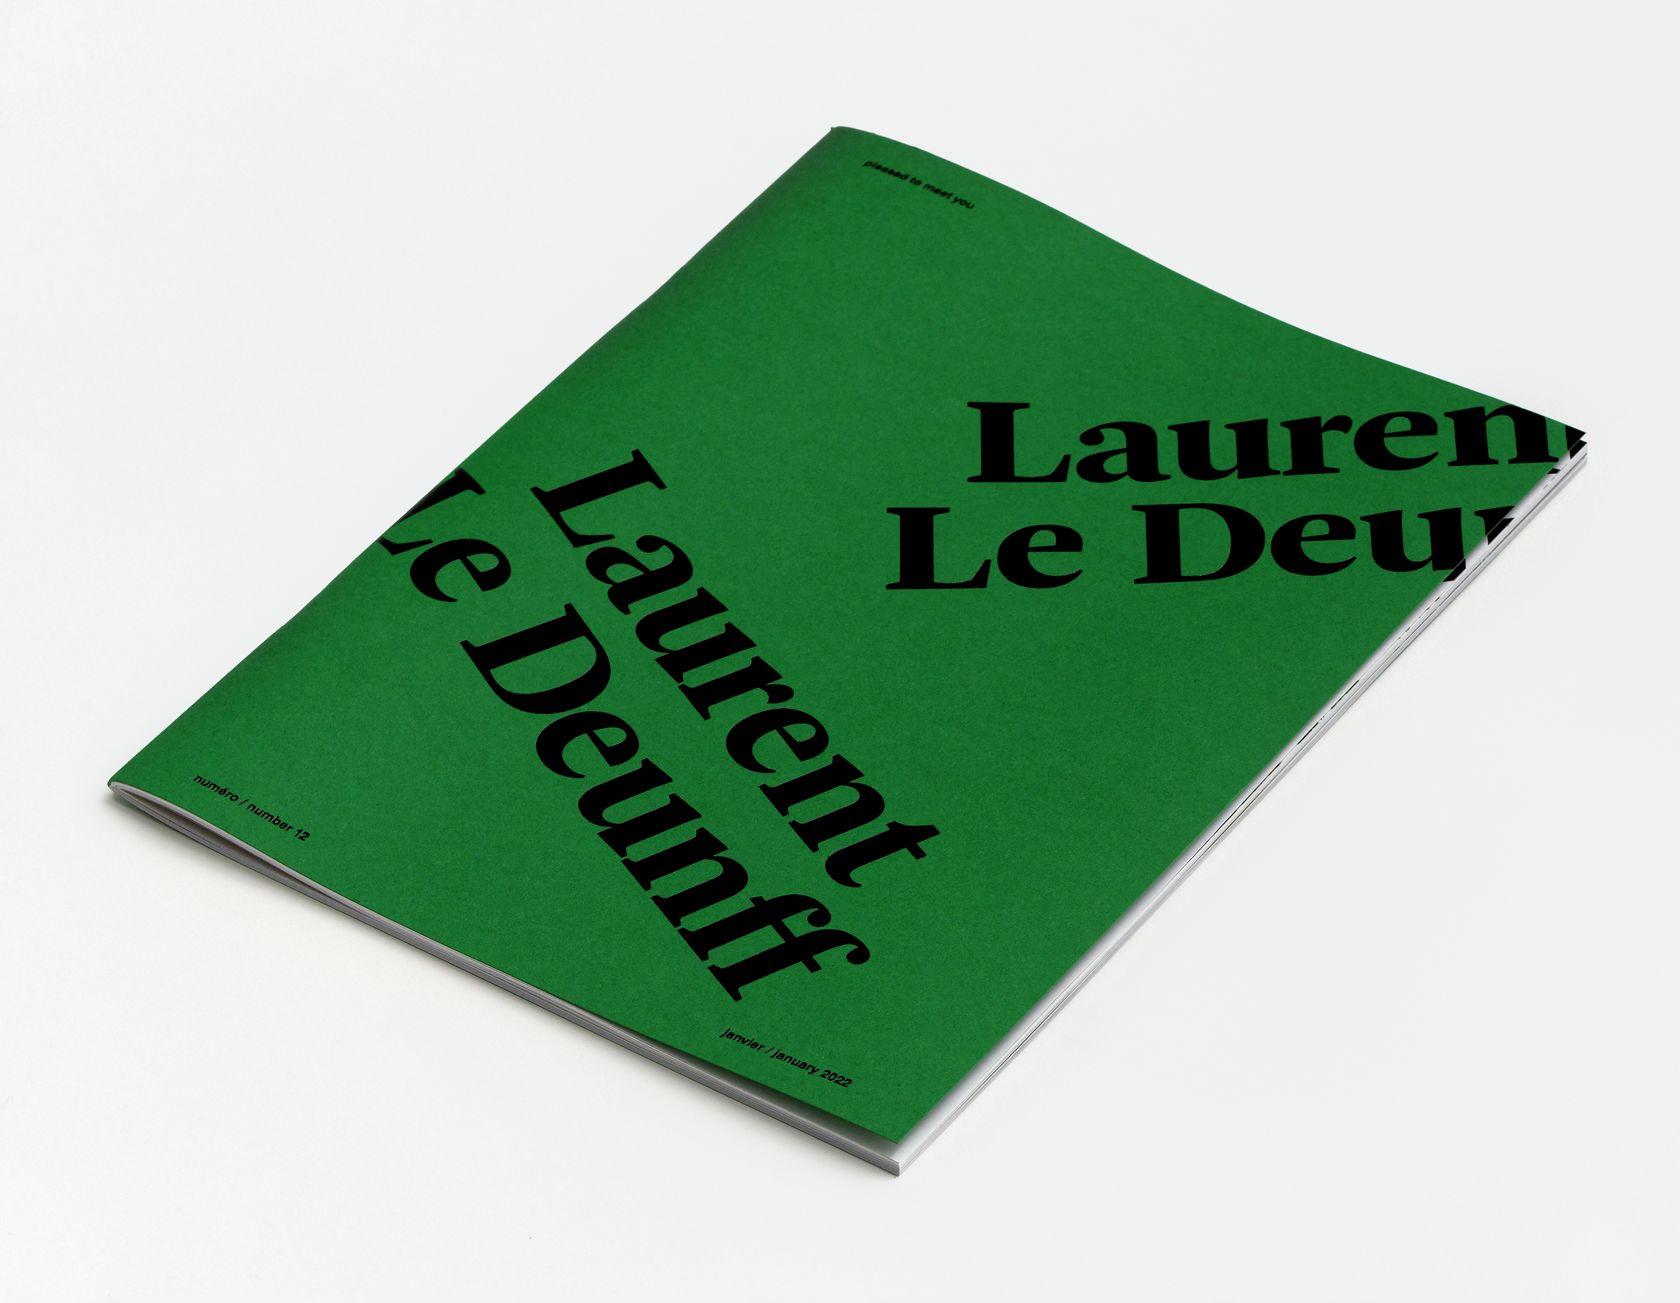 Laurent Le Deunff